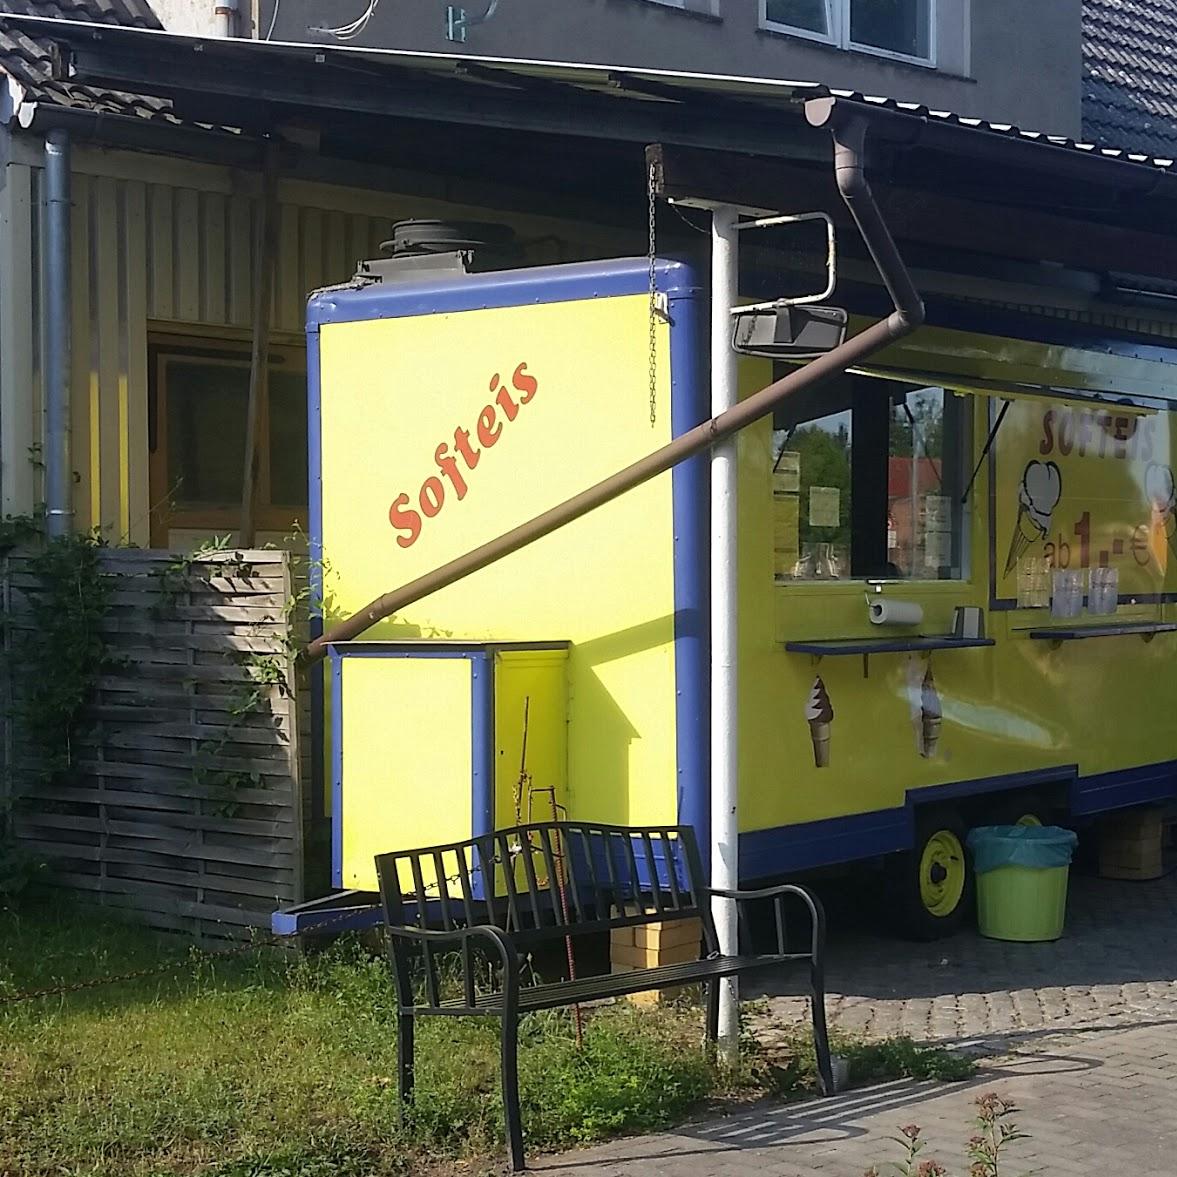 Restaurant "Der gelbe Wagen, Softeis" in Müncheberg